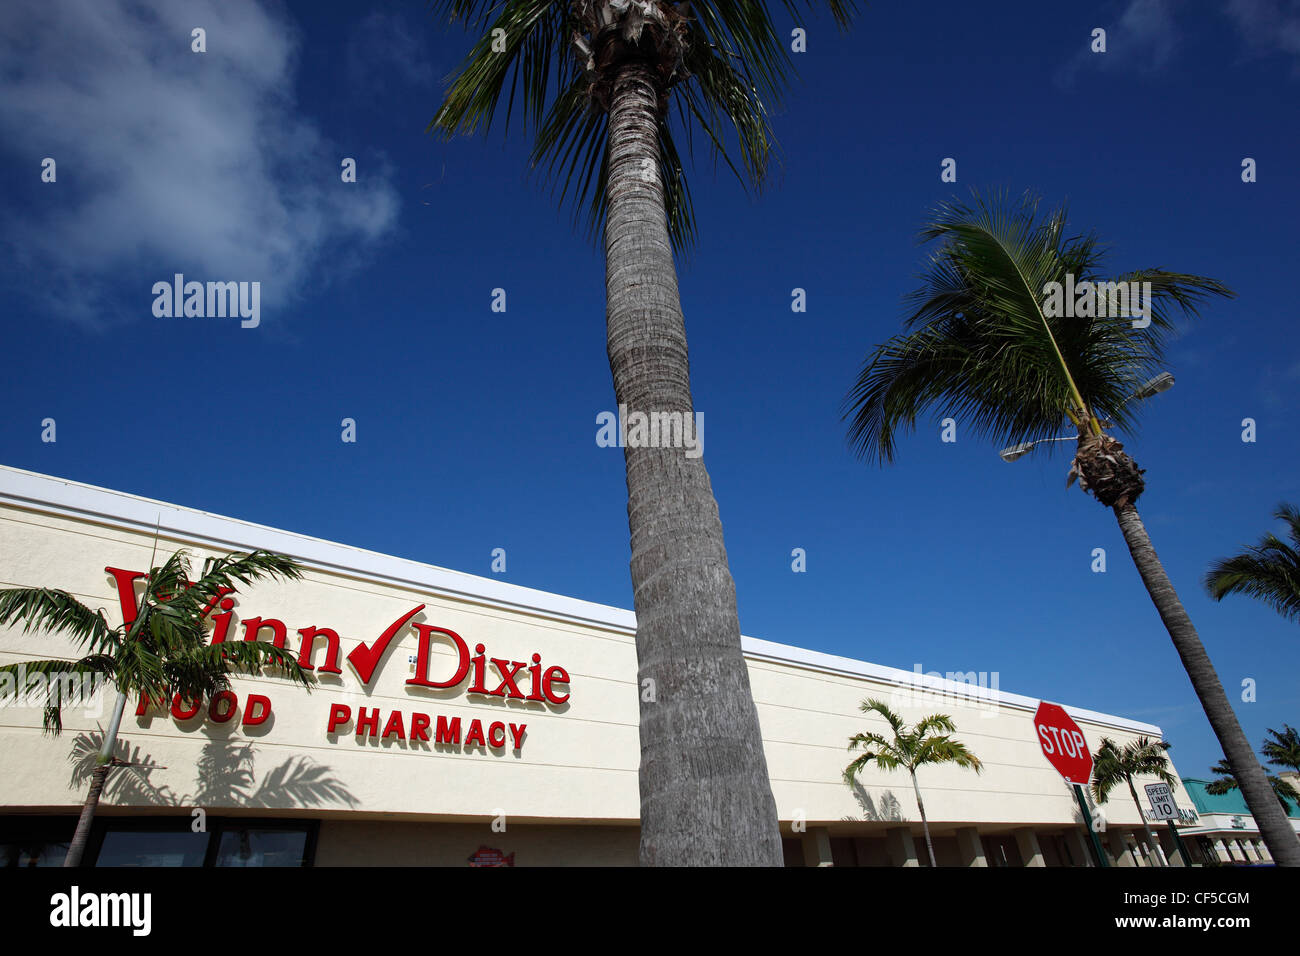 Winn Dixie supermarket, Florida Keys Stock Photo